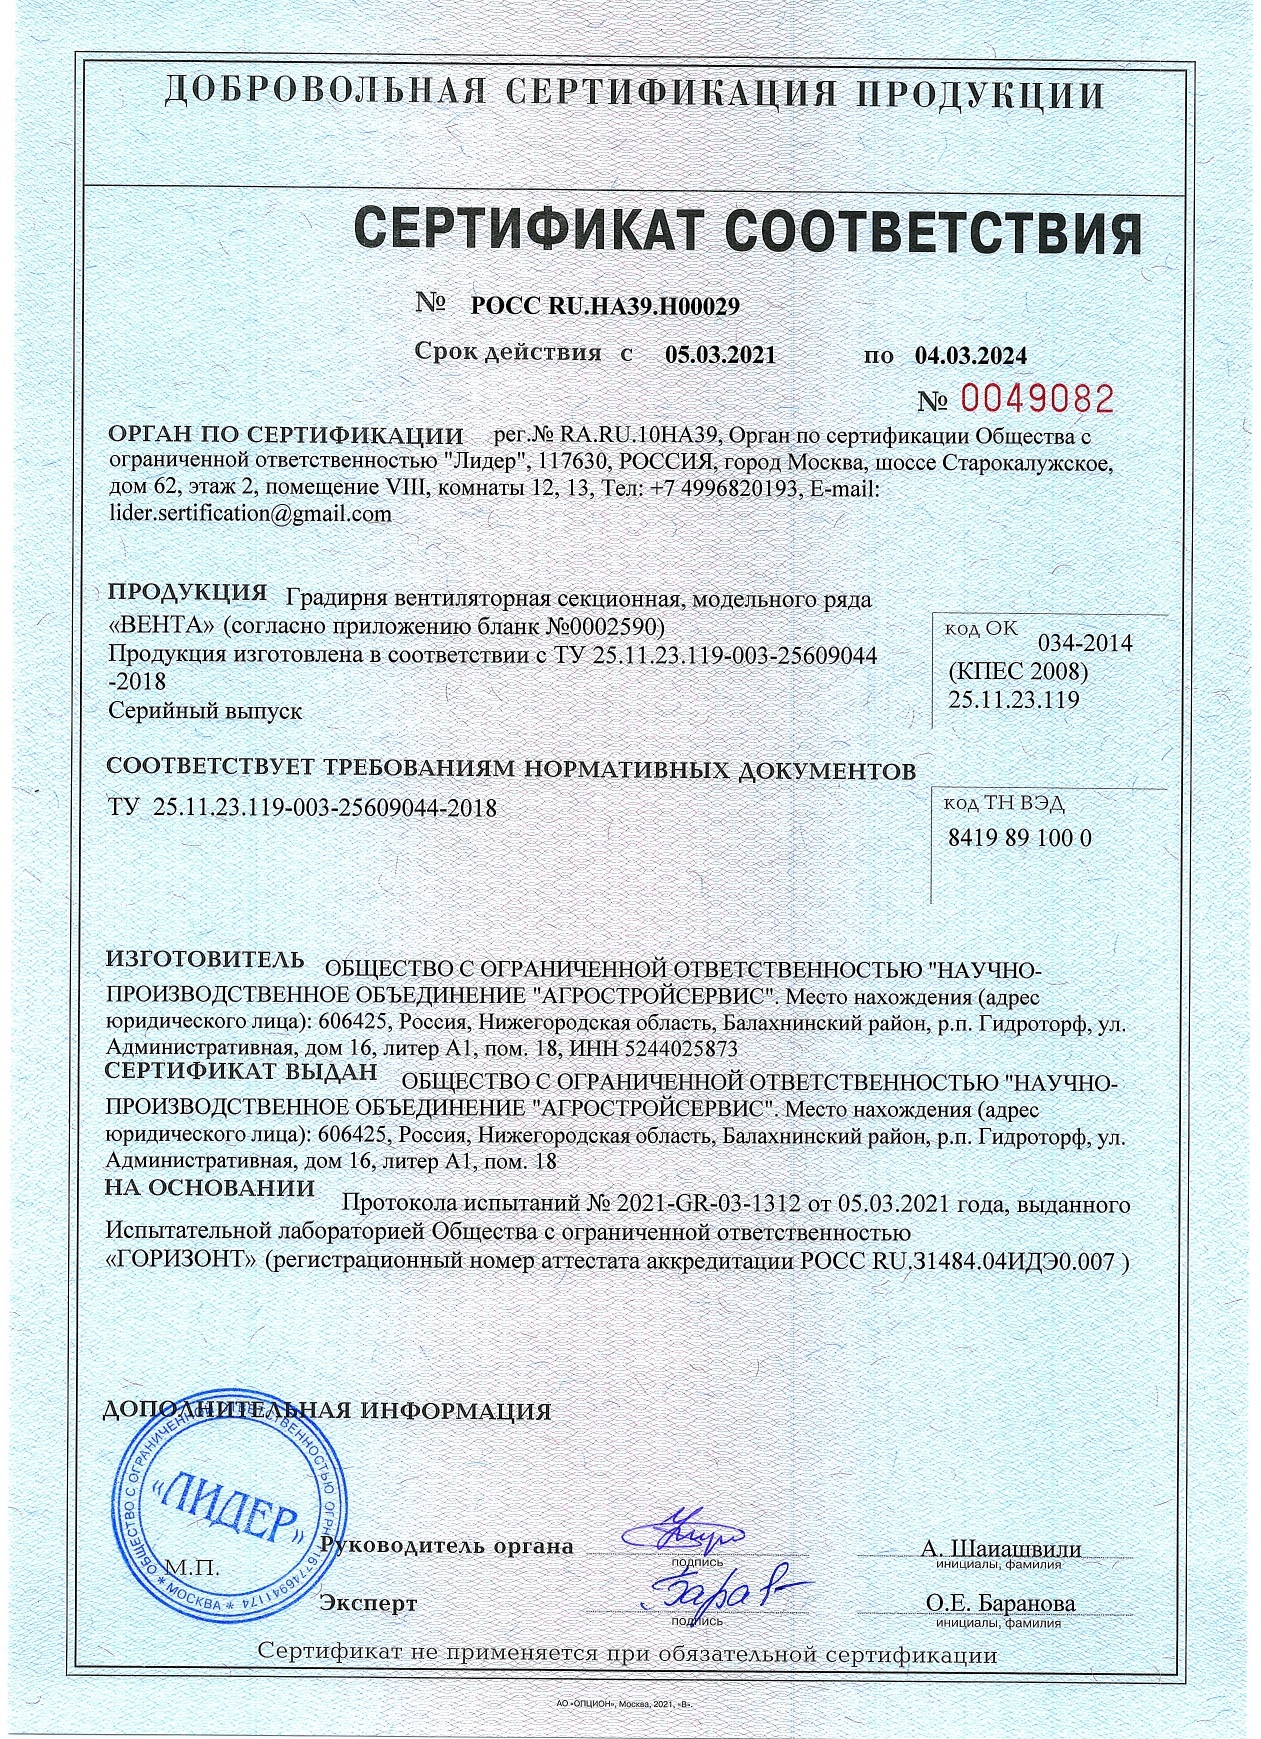 сертификат соответствия на вентиляторные градирни серии Вента